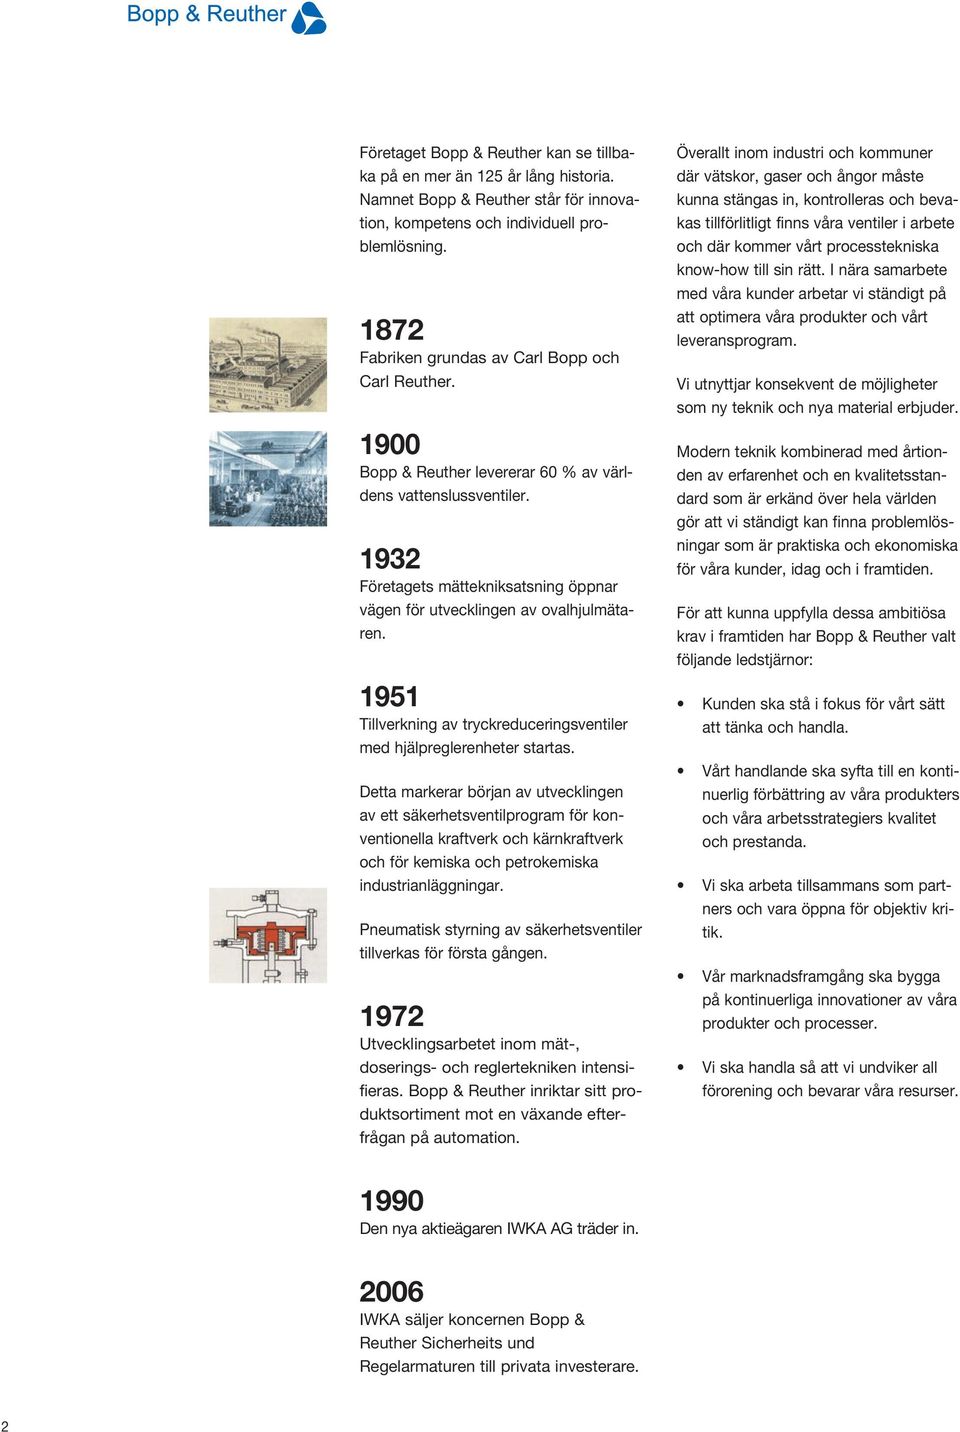 1932 Företagets mättekniksatsning öppnar vägen för utvecklingen av ovalhjulmätaren. 1951 Tillverkning av tryckreduceringsventiler med hjälpreglerenheter startas.